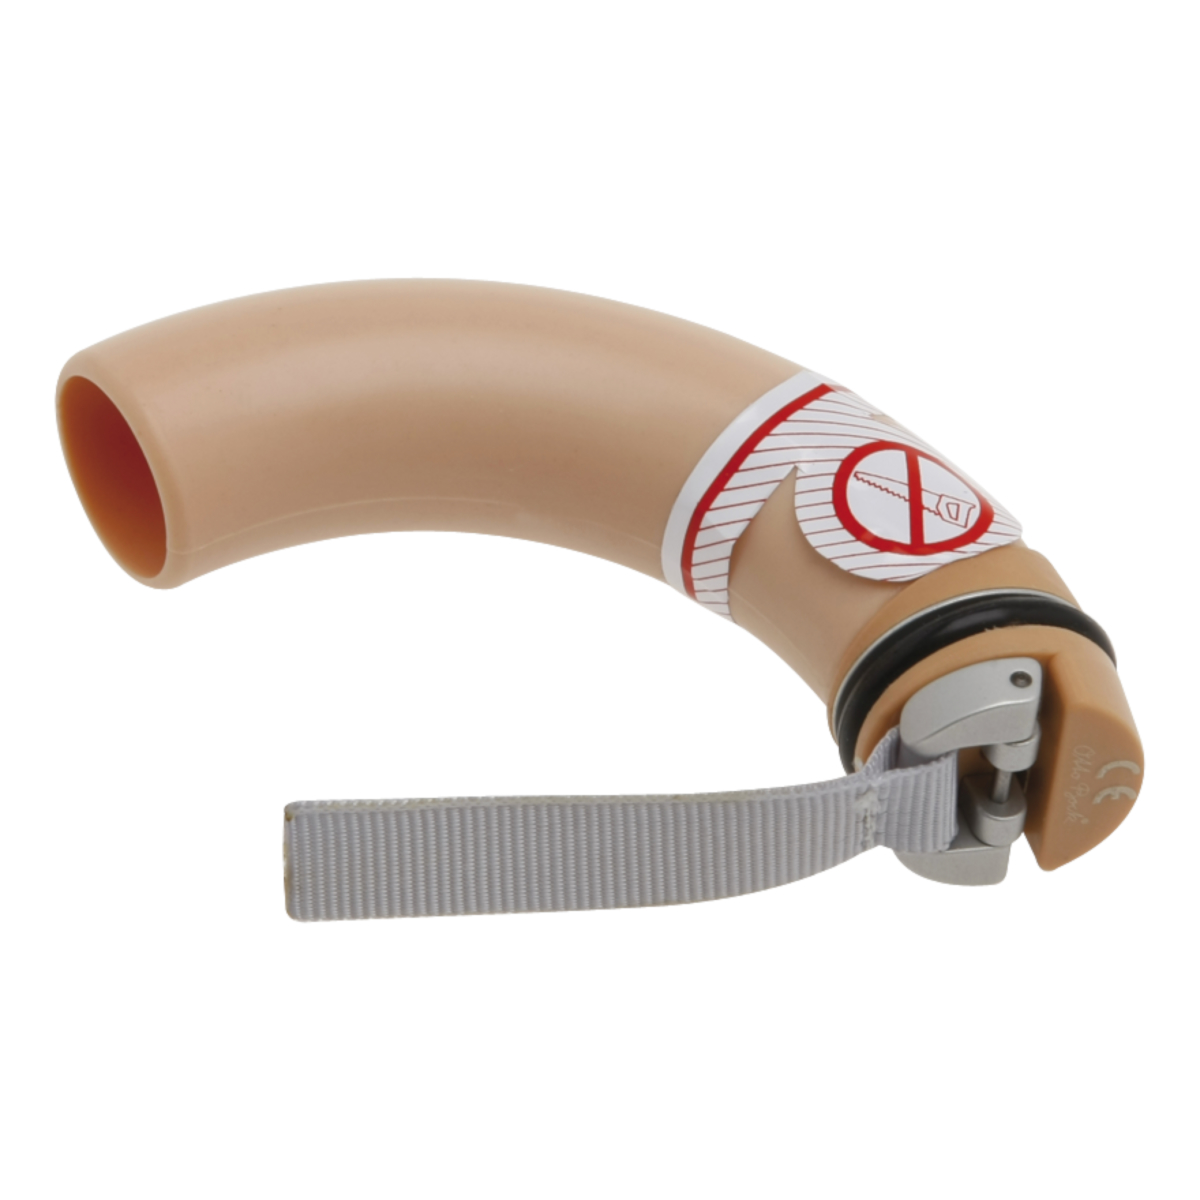 Tube Valve for Suction Socket, Suspension, Upper Limb Prosthetics, Prosthetics